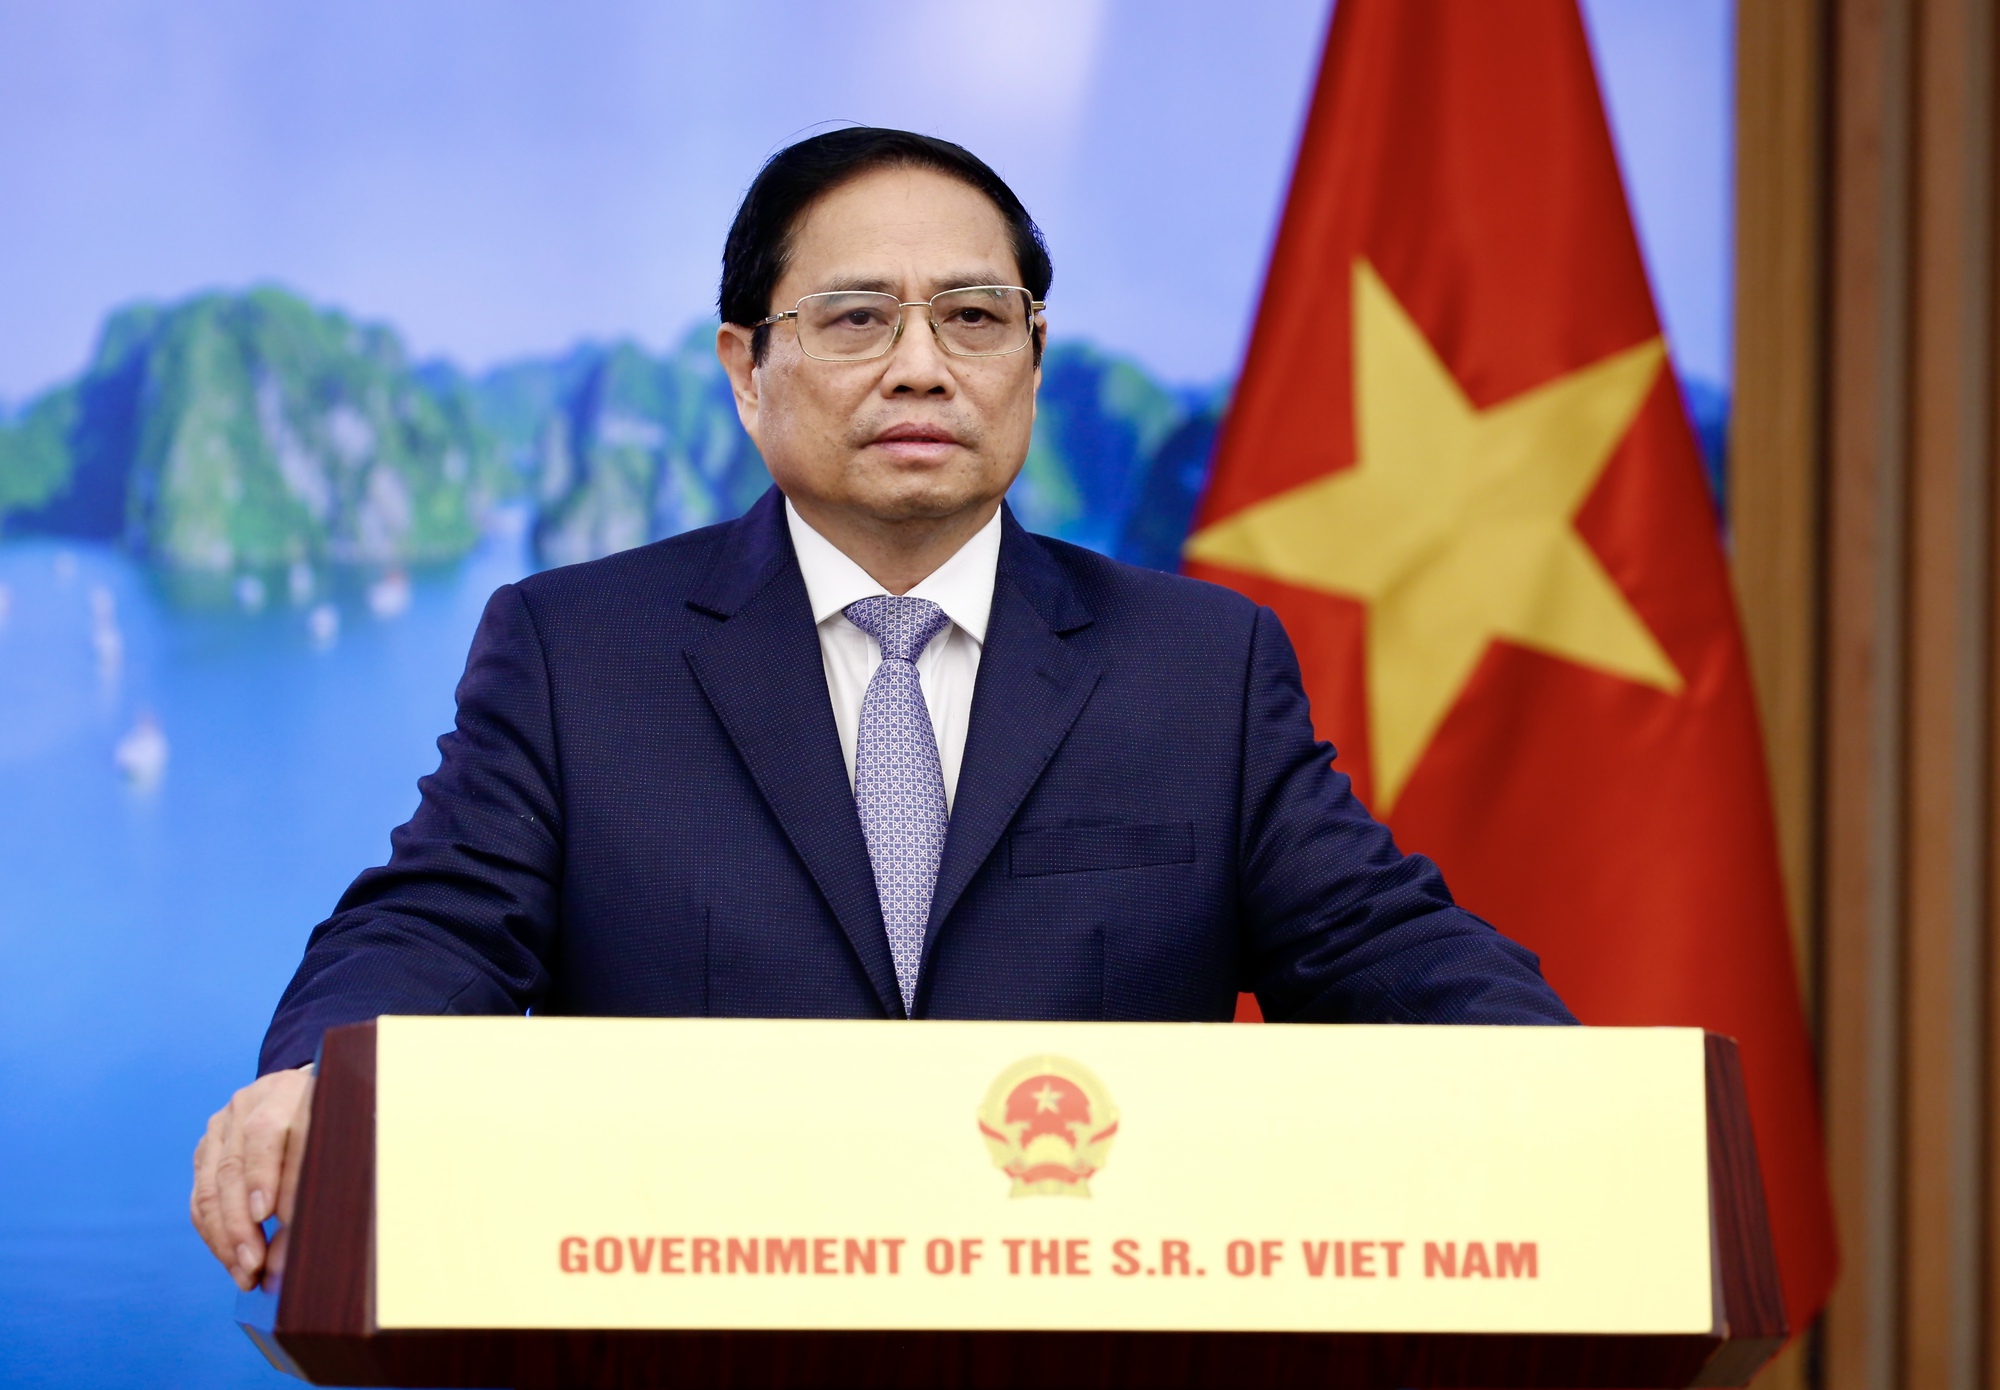 Thủ tướng: Việt Nam sẵn sàng tiếp tục đóng góp tích cực vào phục hồi kinh tế và phát triển bền vững ở châu Á - Thái Bình Dương - Ảnh 1.